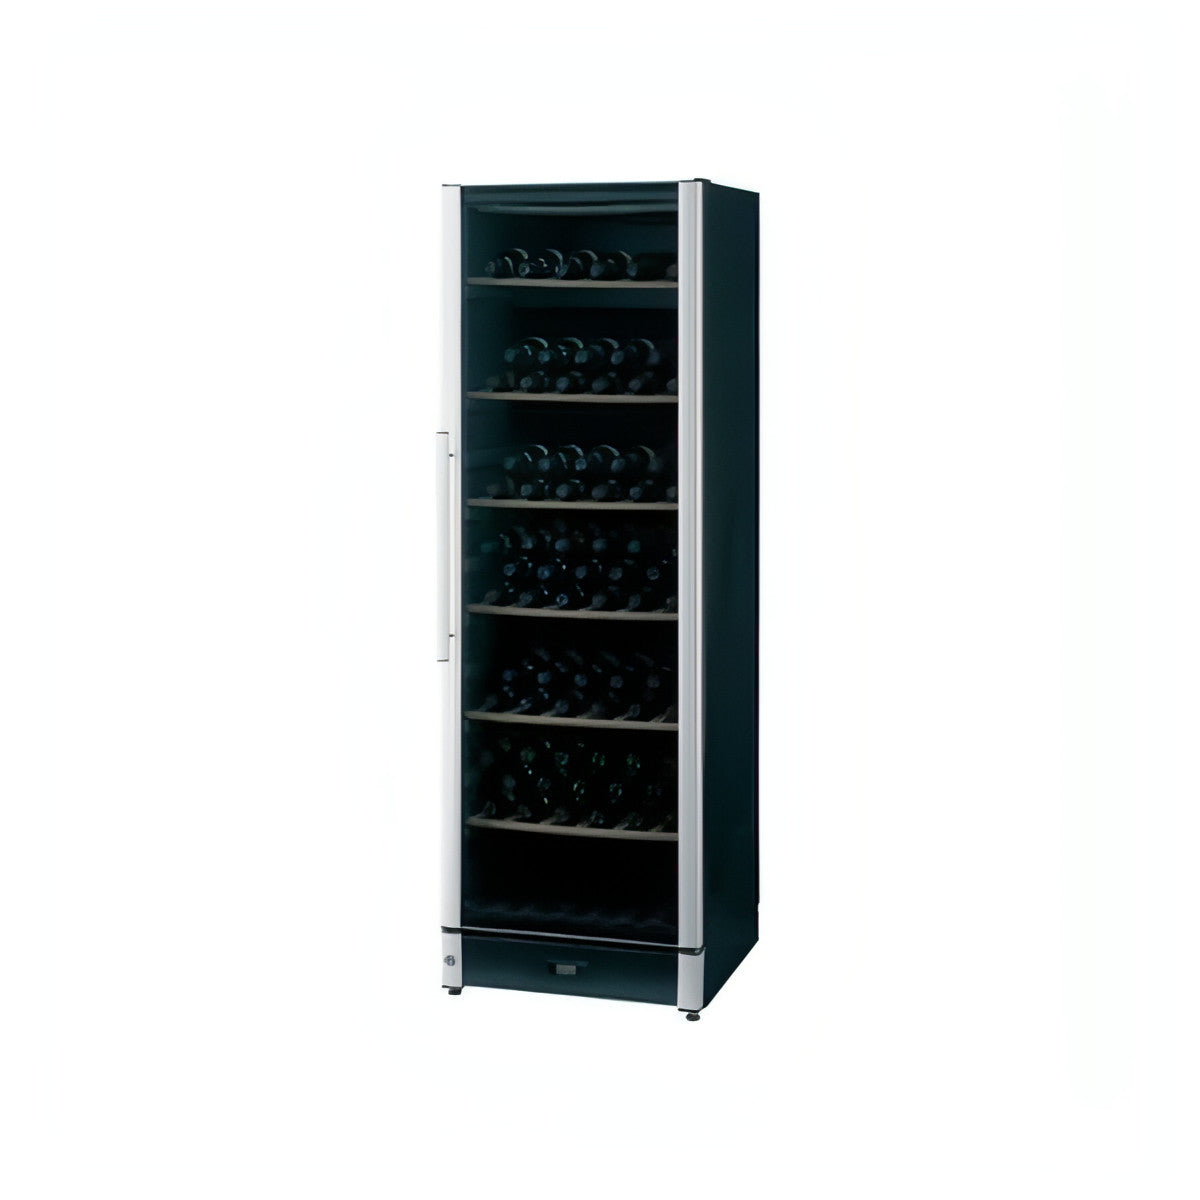 Vestfrost - 197 Bottle Wine Cooler FZ365W - black